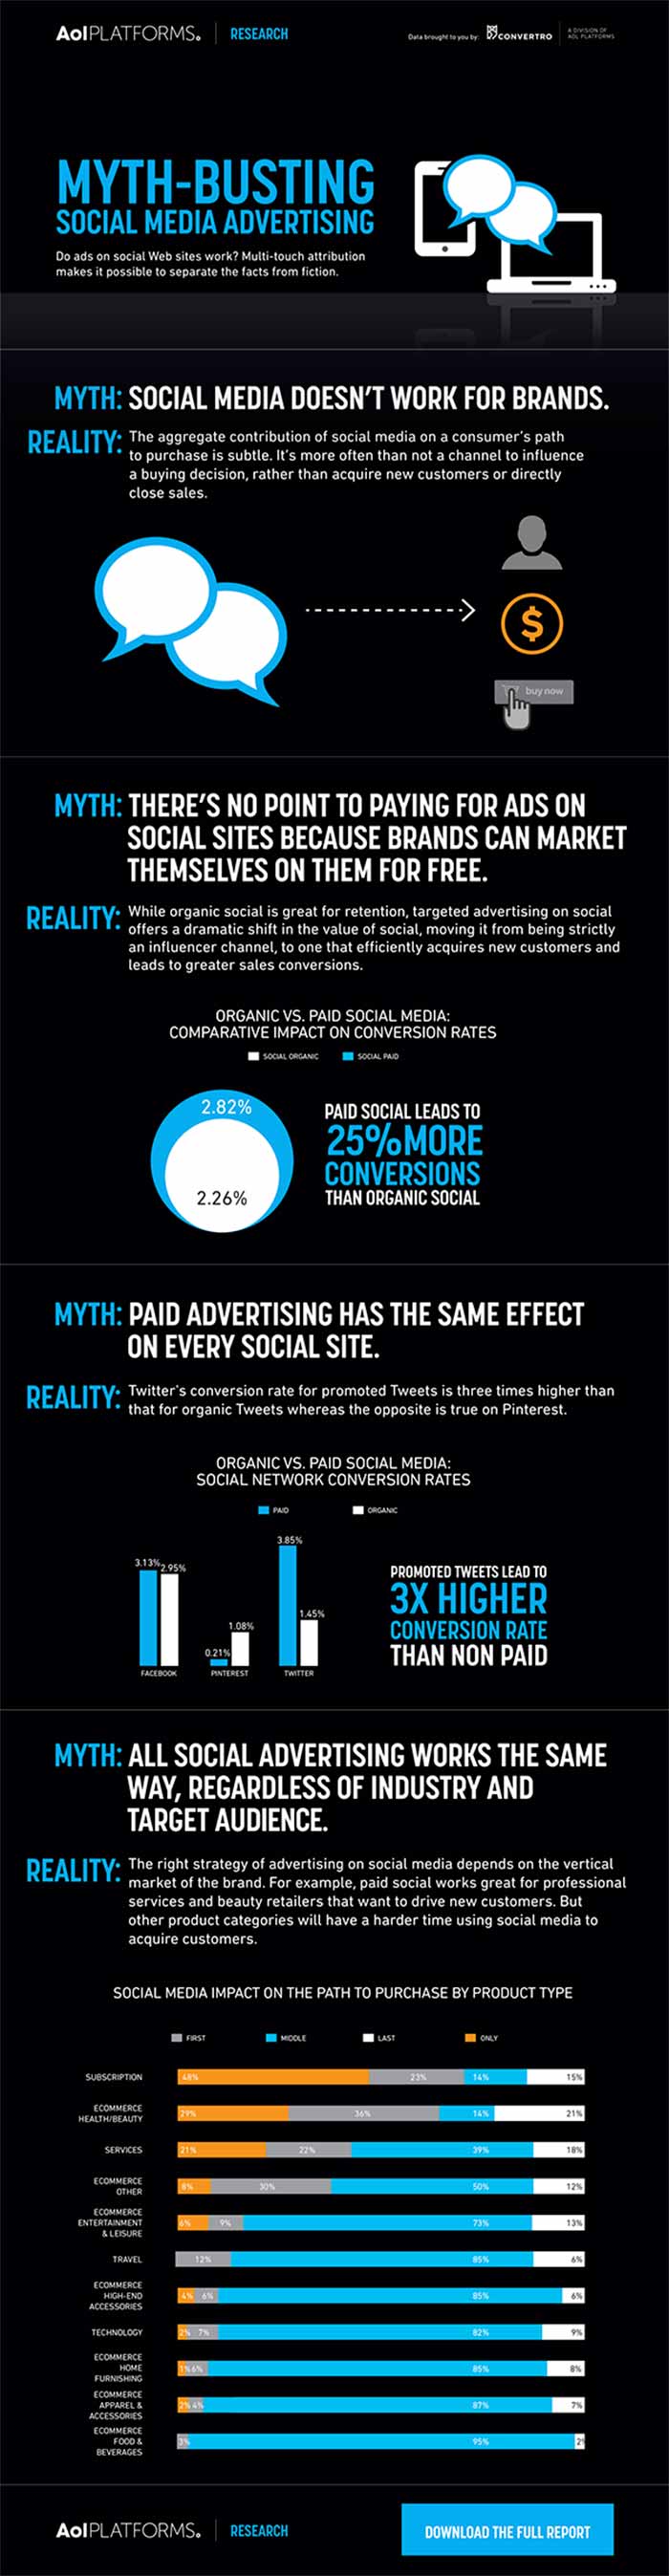 Infografia sobre mitos en la publicidad en redes sociales